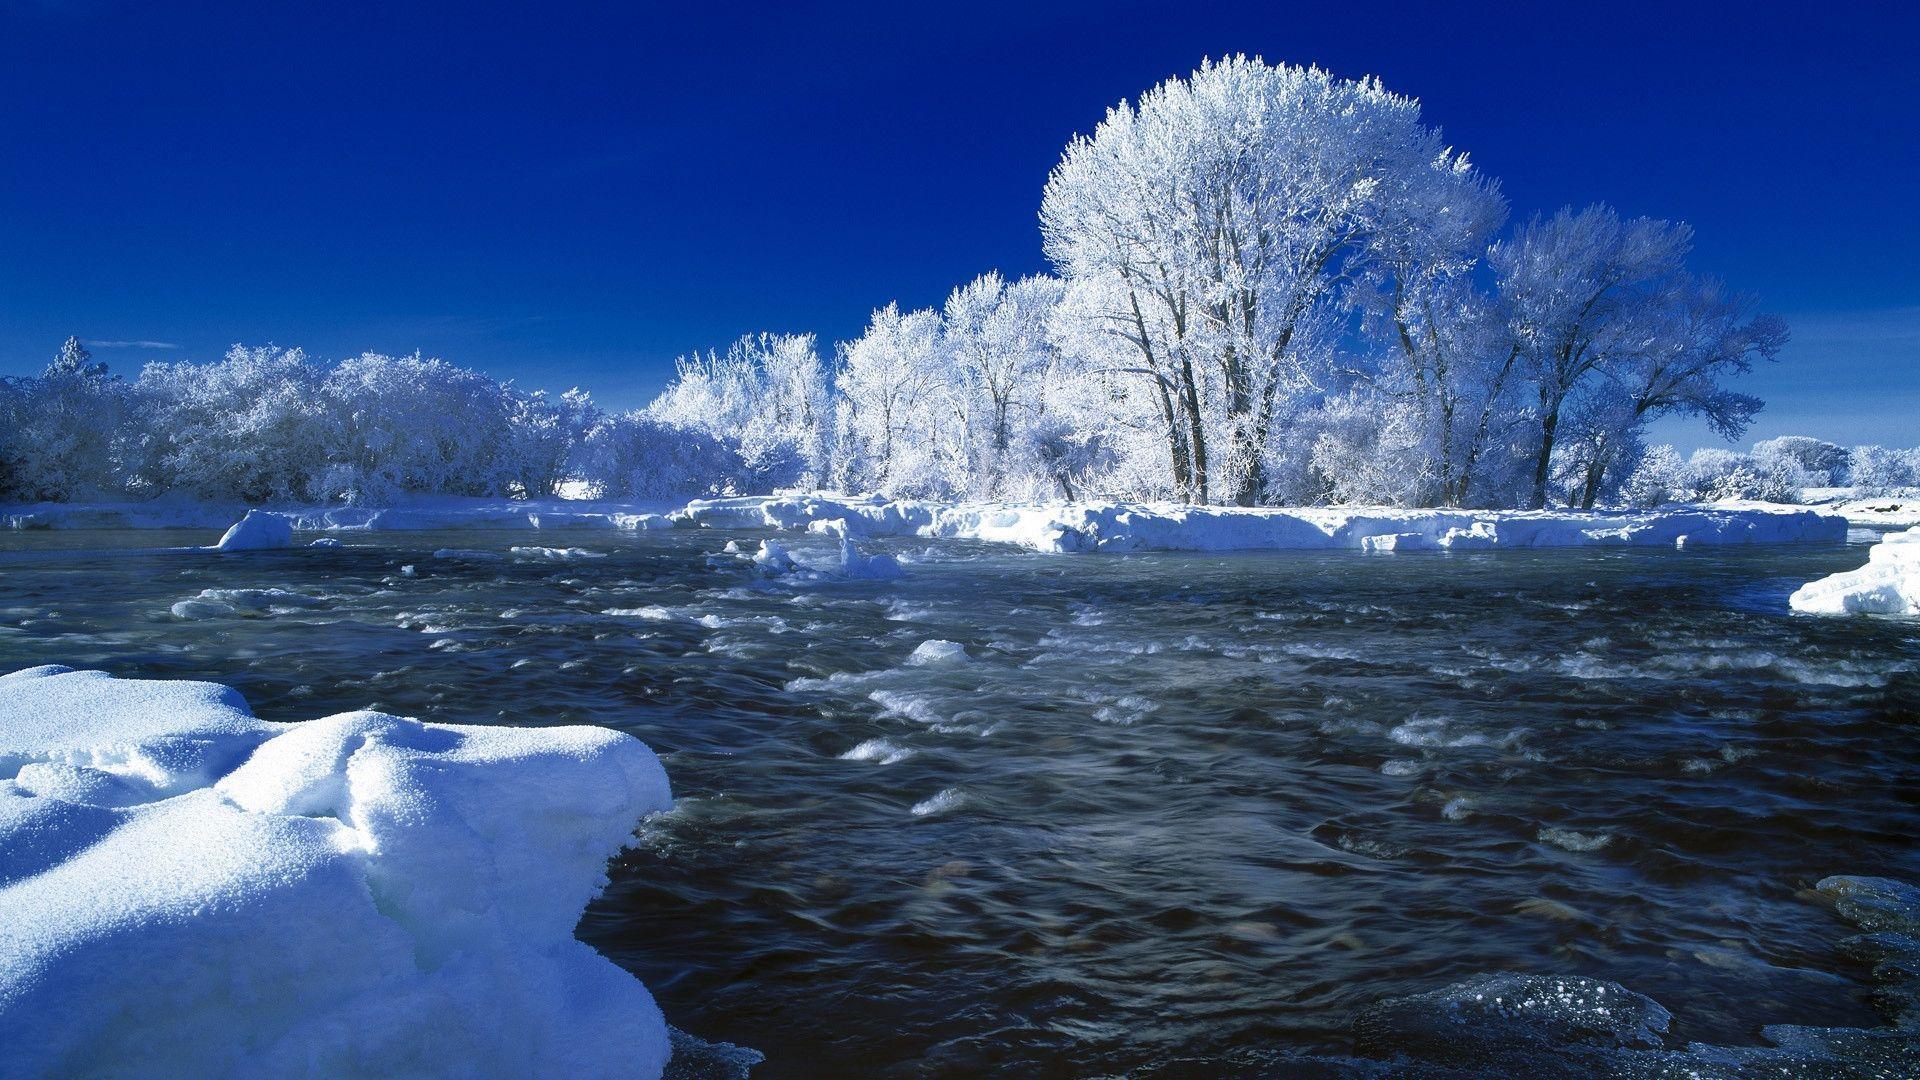 Winter Snow River Scene Wallpaper 1920x1080 px Free Download